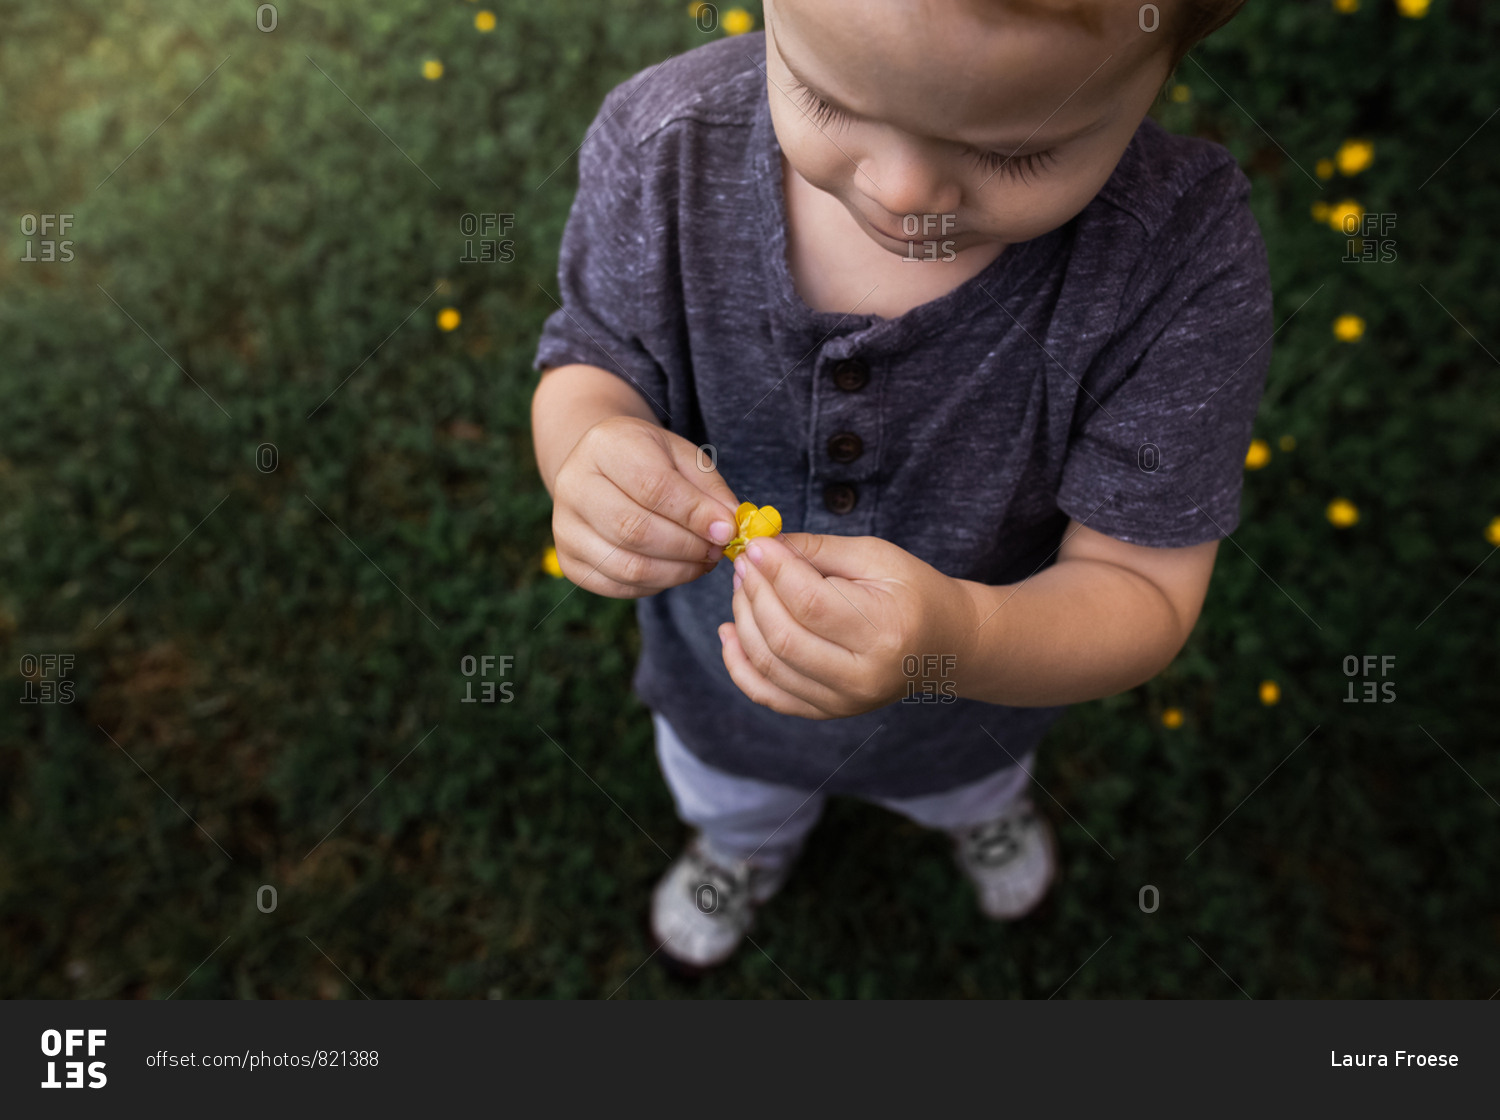 Boy holding little yellow flower in grassy field.